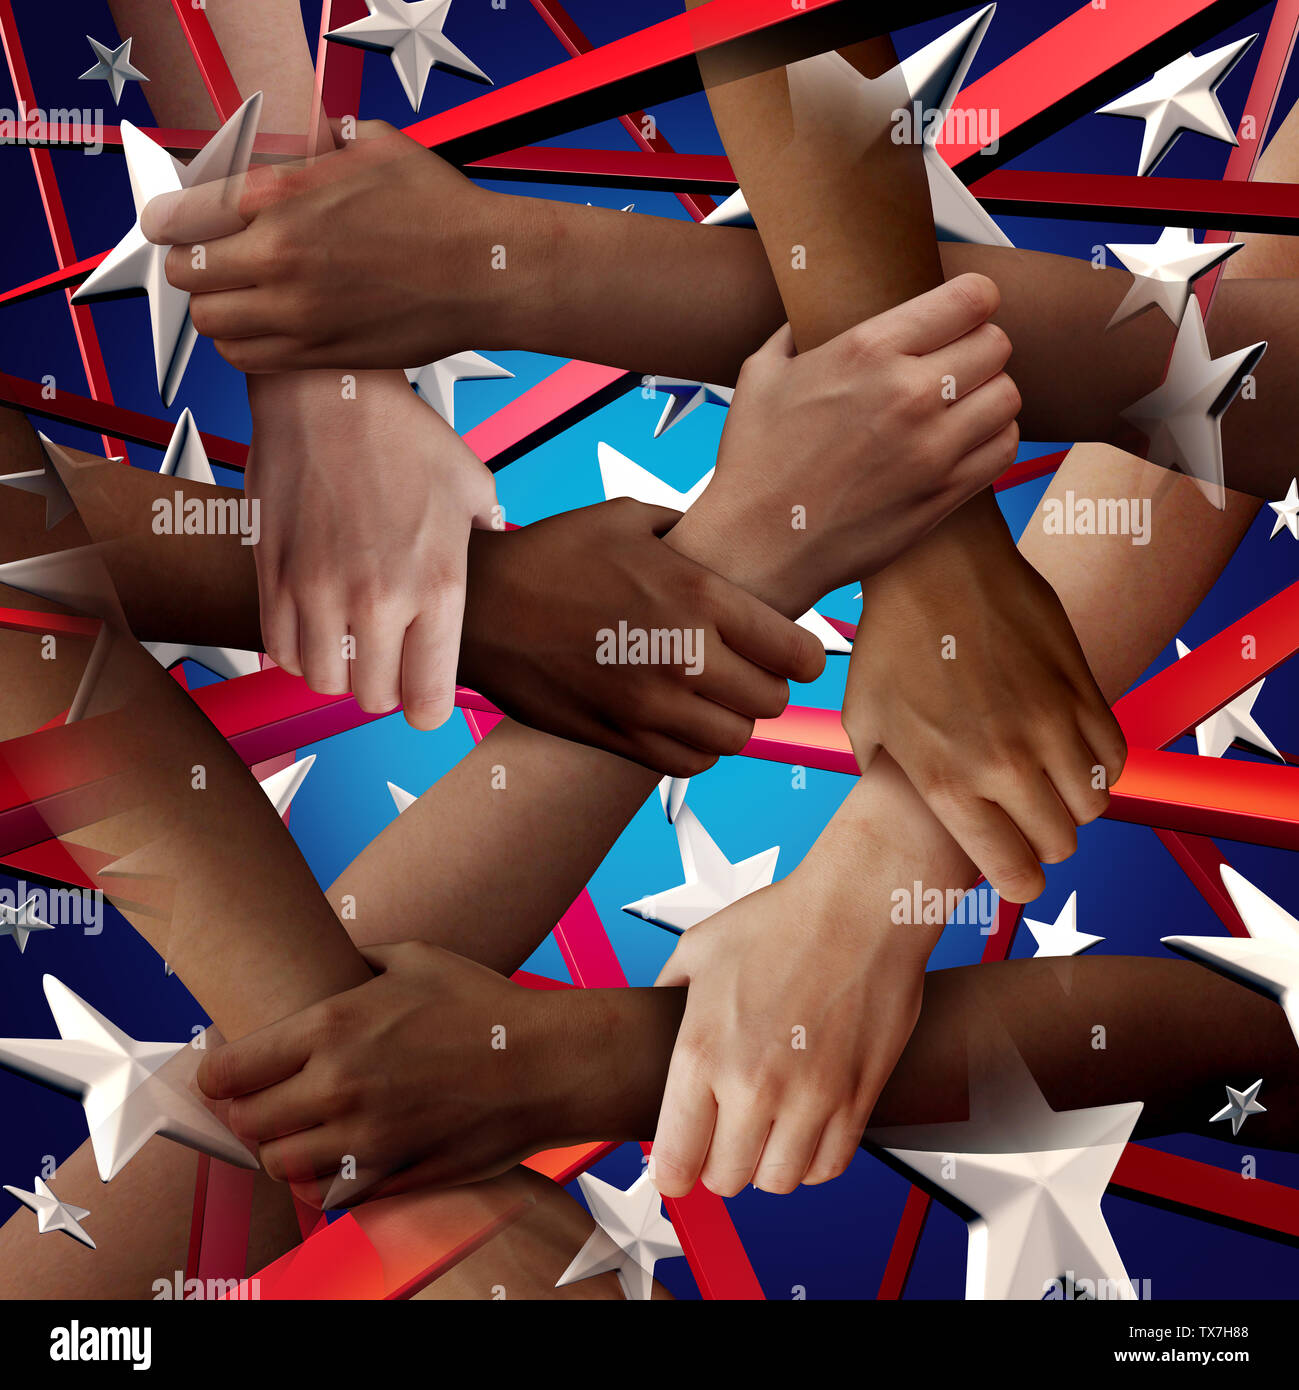 Am 4. Juli Vielfalt Feier wie ein amerikanischer Nationalfeiertag feiern verschiedene Menschen in den Vereinigten Staaten für die Unabhängigkeit Tag als Menschen. Stockfoto